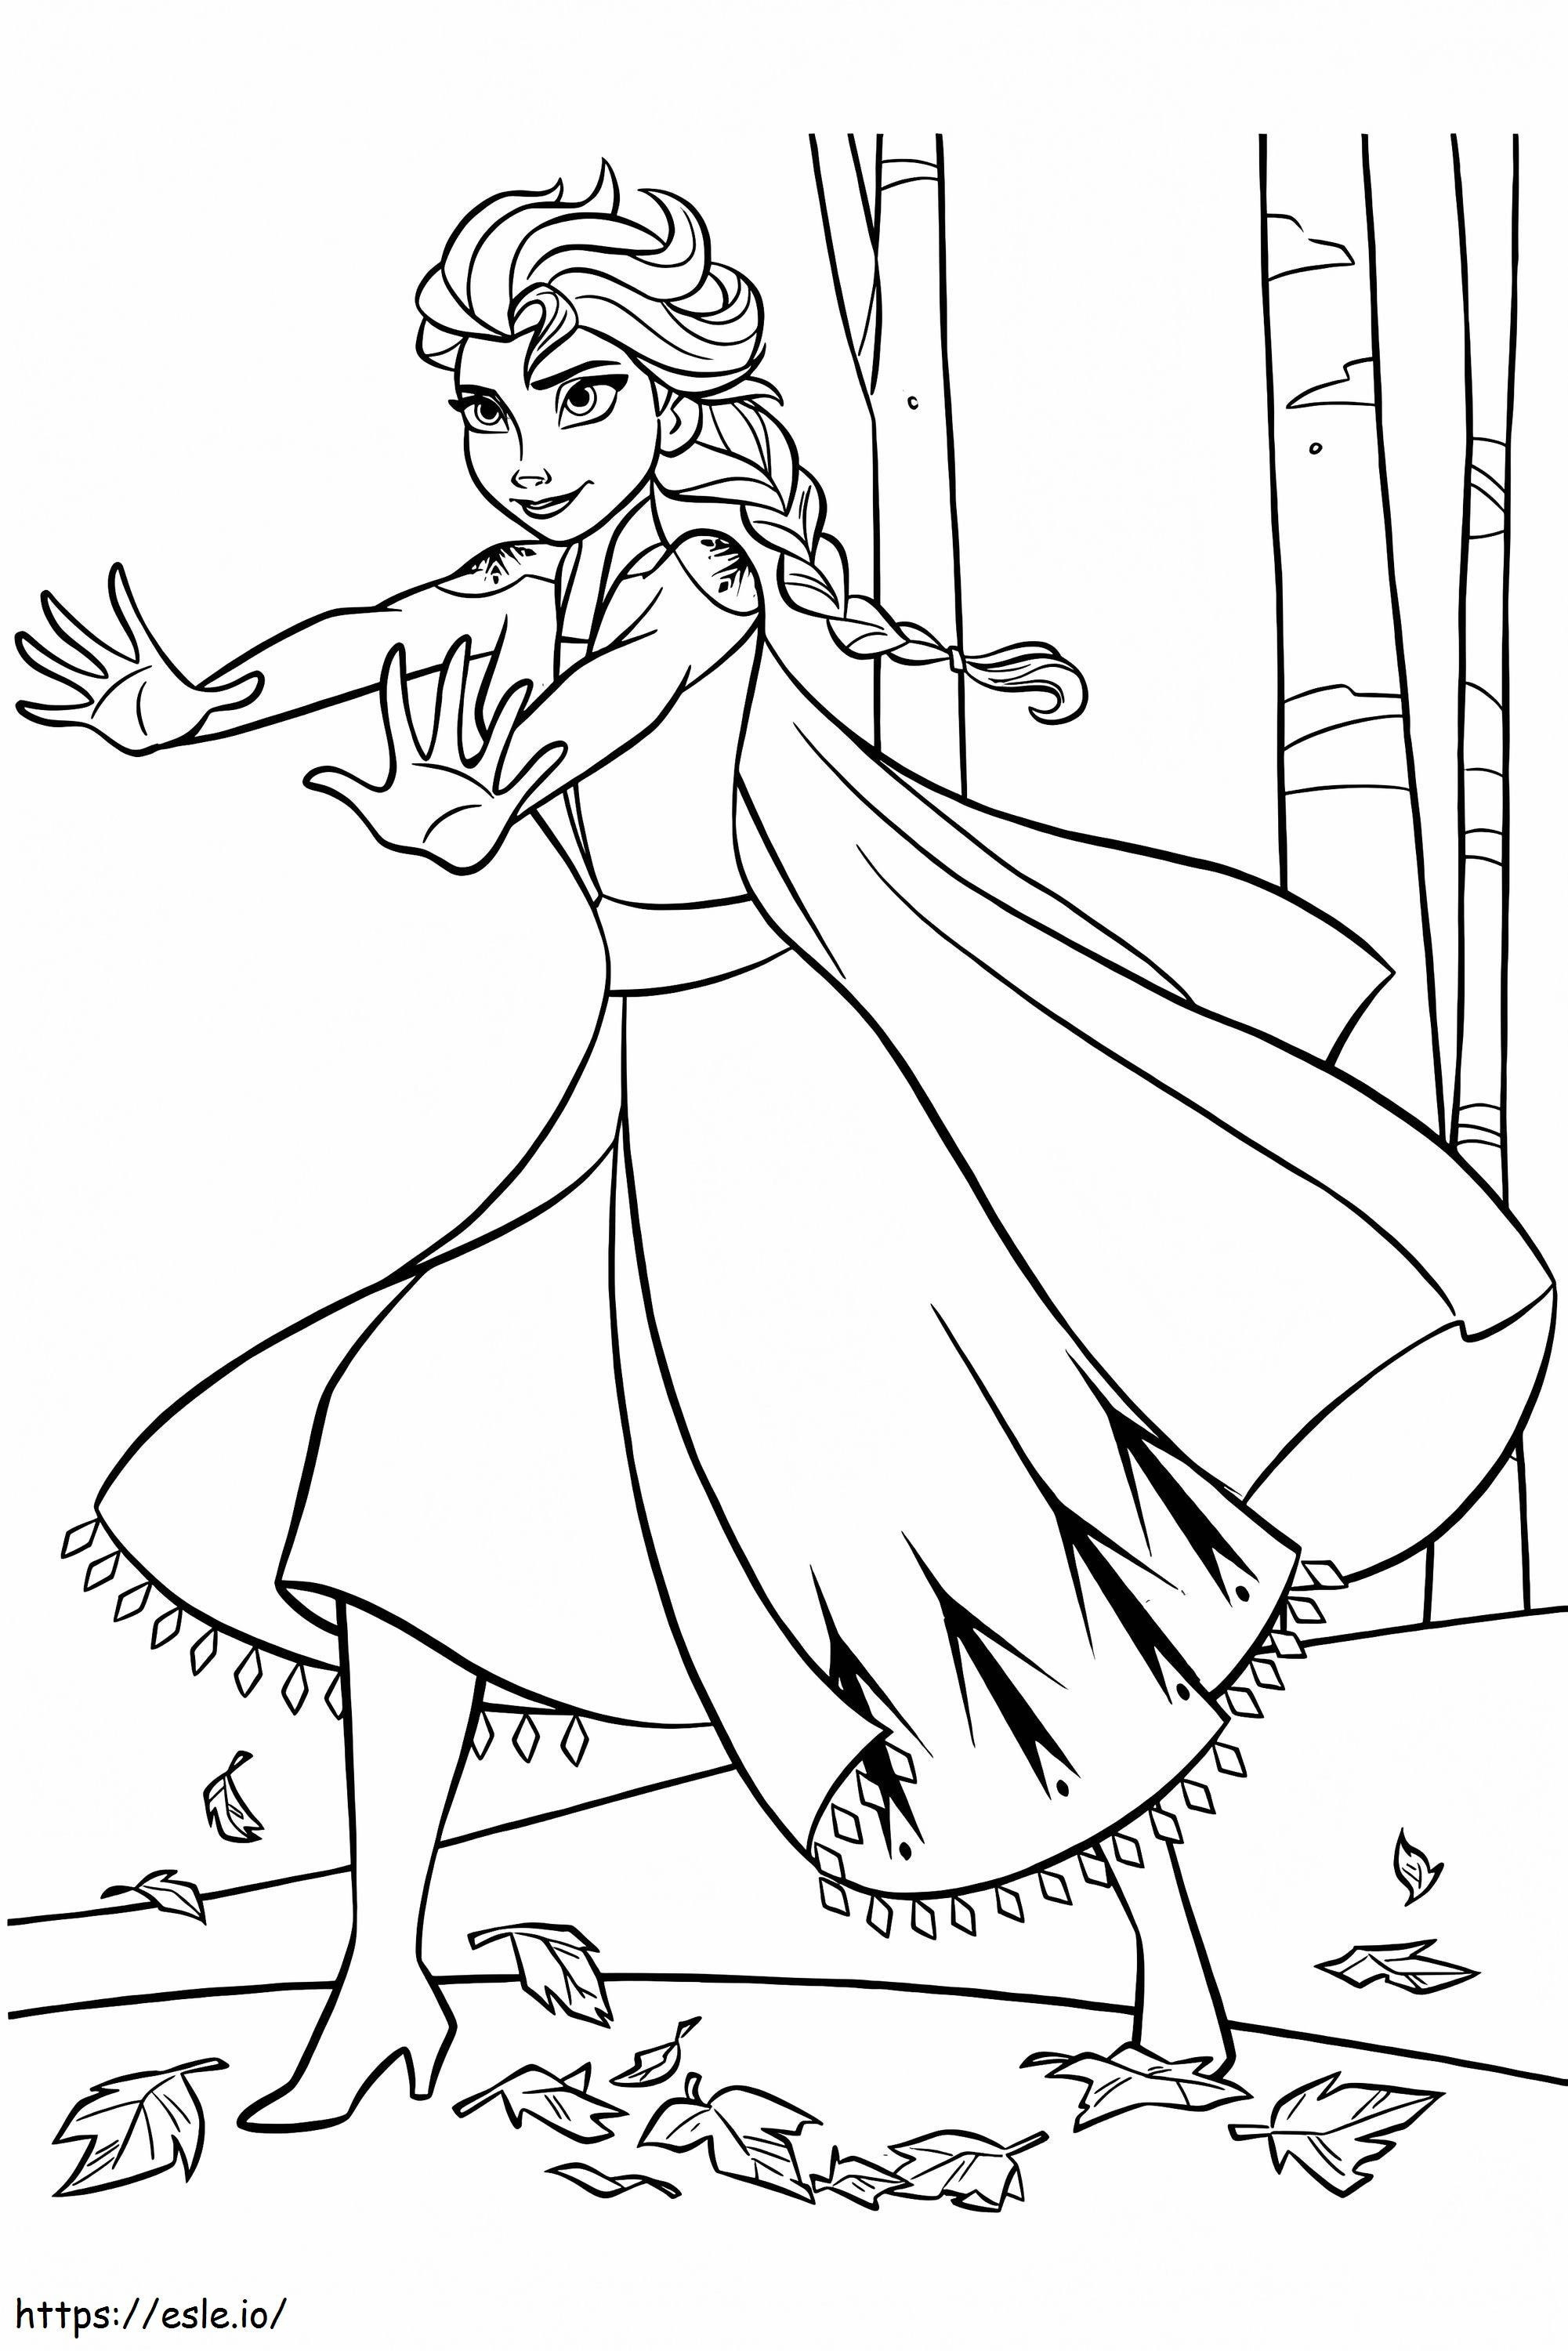 Coloriage La Reine des Neiges 2 Kristoff Elsa 1 683X1024 à imprimer dessin